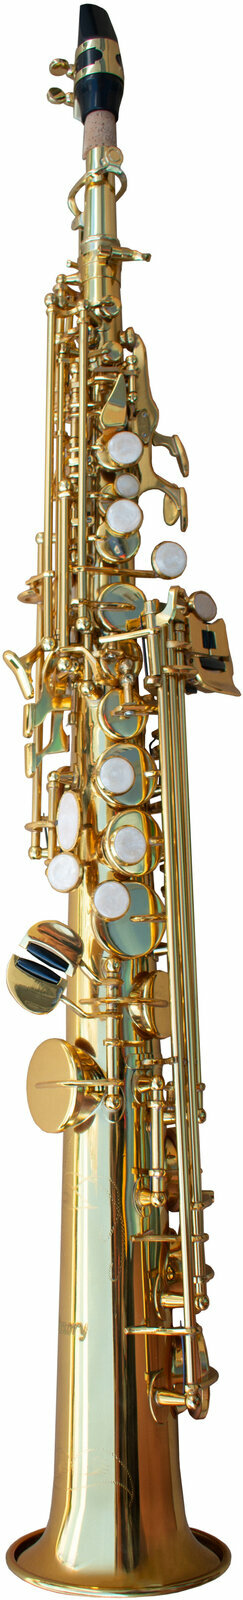 Soprano saxophone Victory VSS Student 01 Soprano saxophone